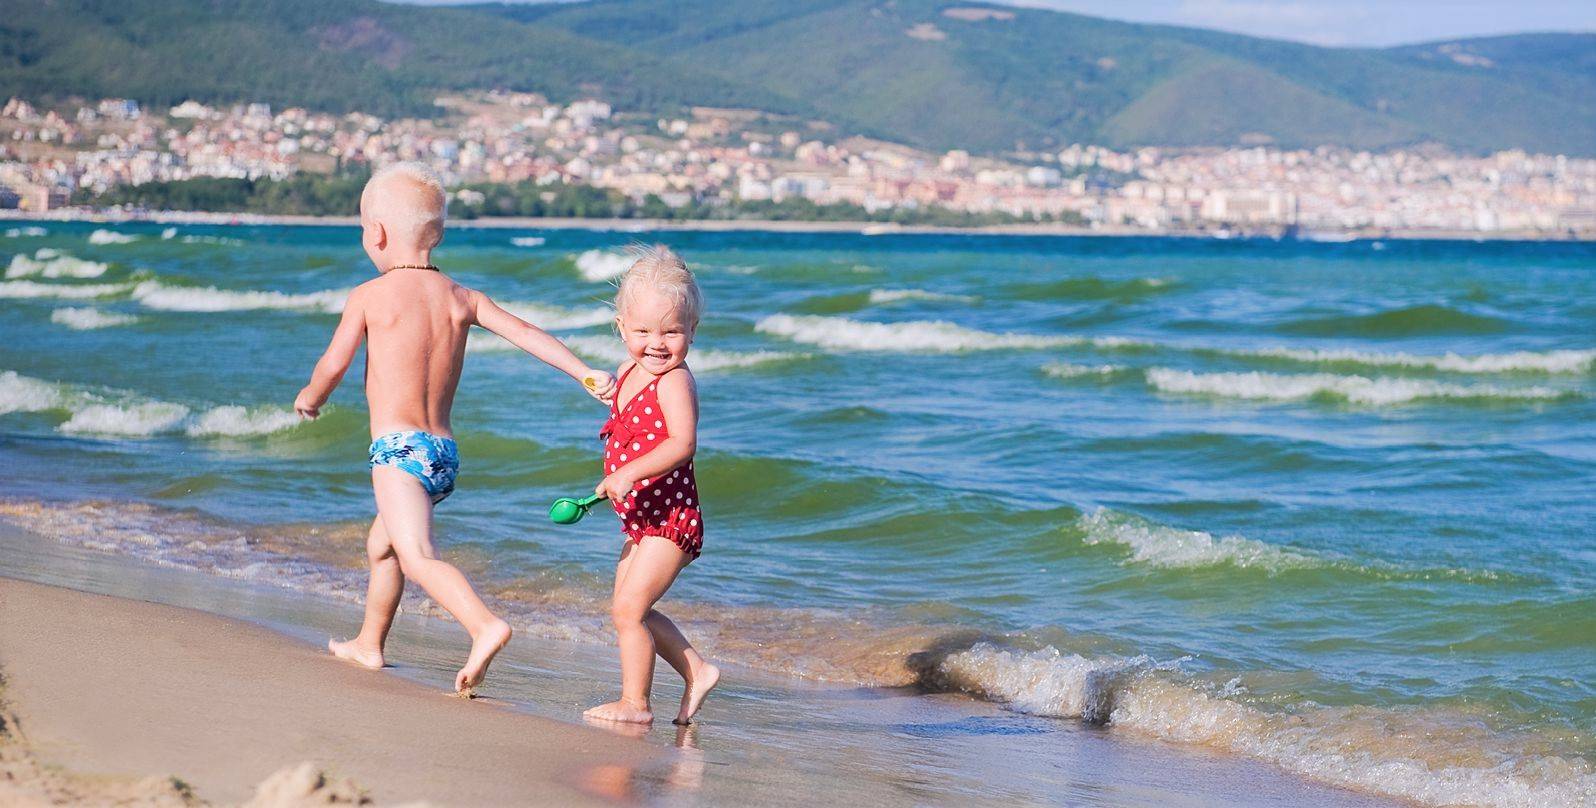 11 лучших курортов для семейного отдыха на море в болгарии в 2020 году